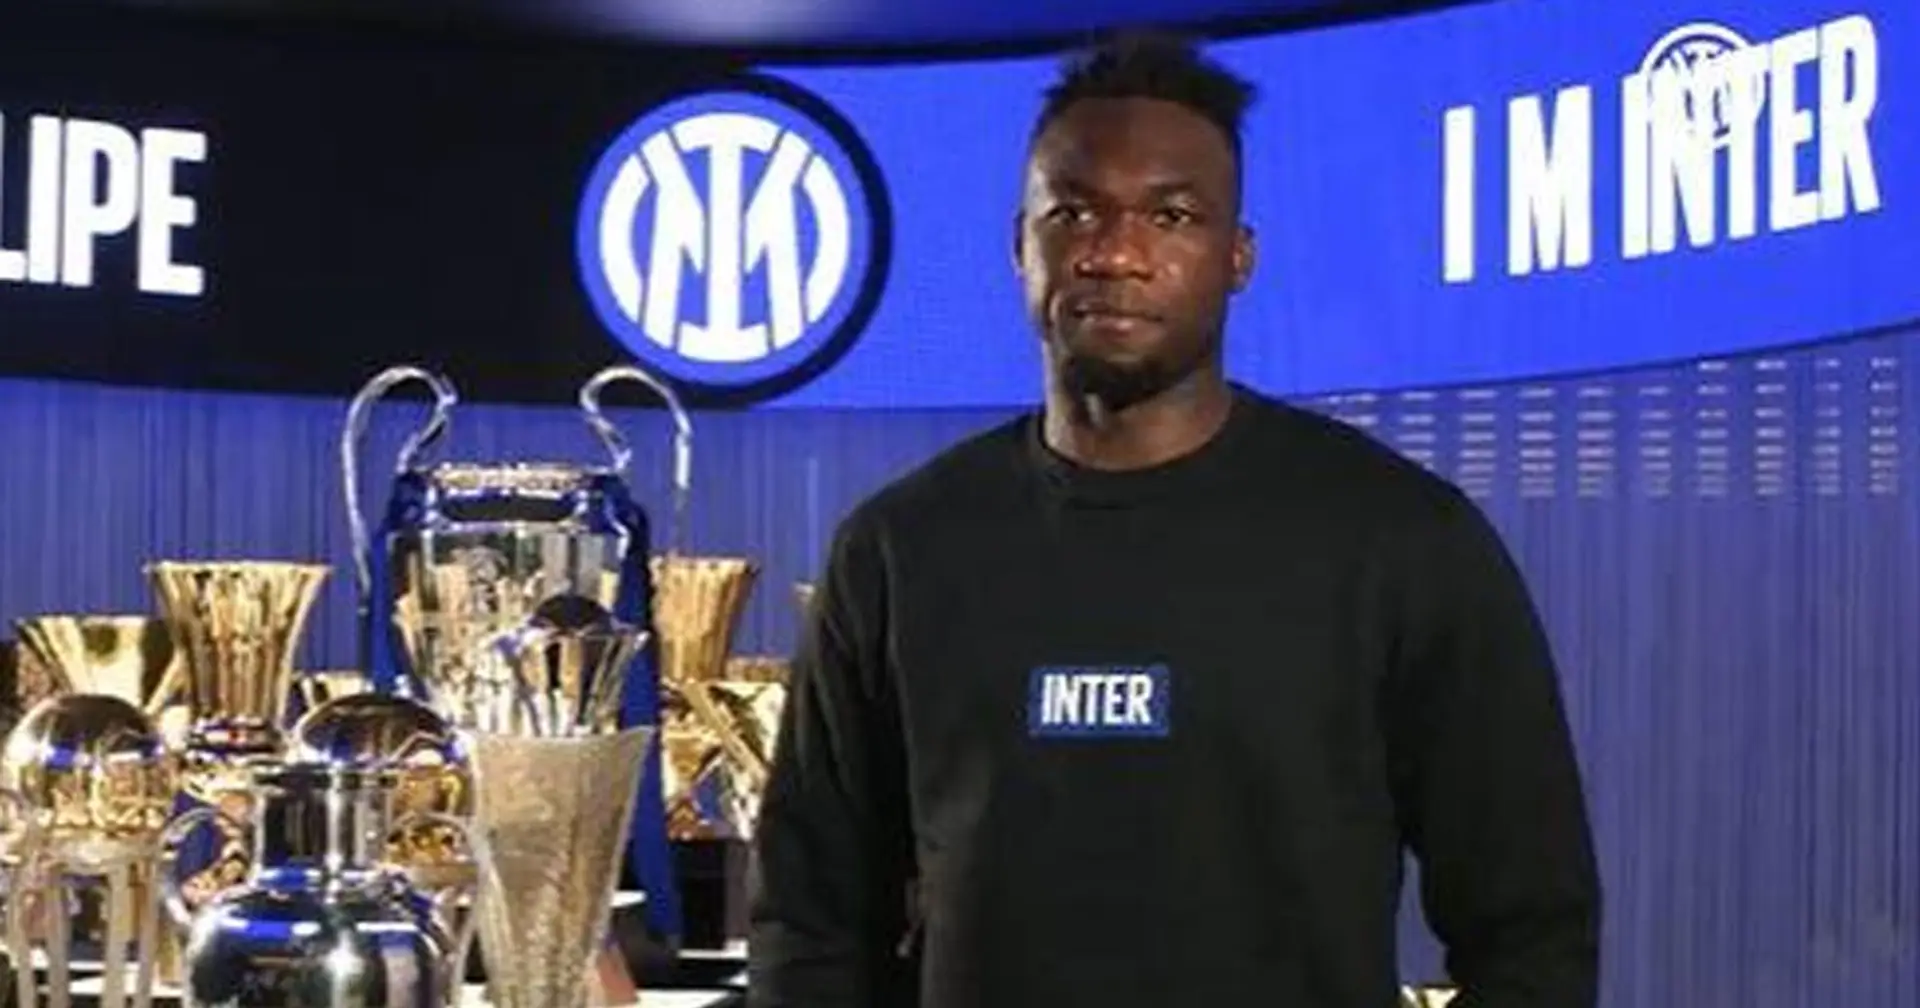 "Sono molto emozionato, voglio fare bene all'Inter", le prime parole di Caicedo da giocatore nerazzurro